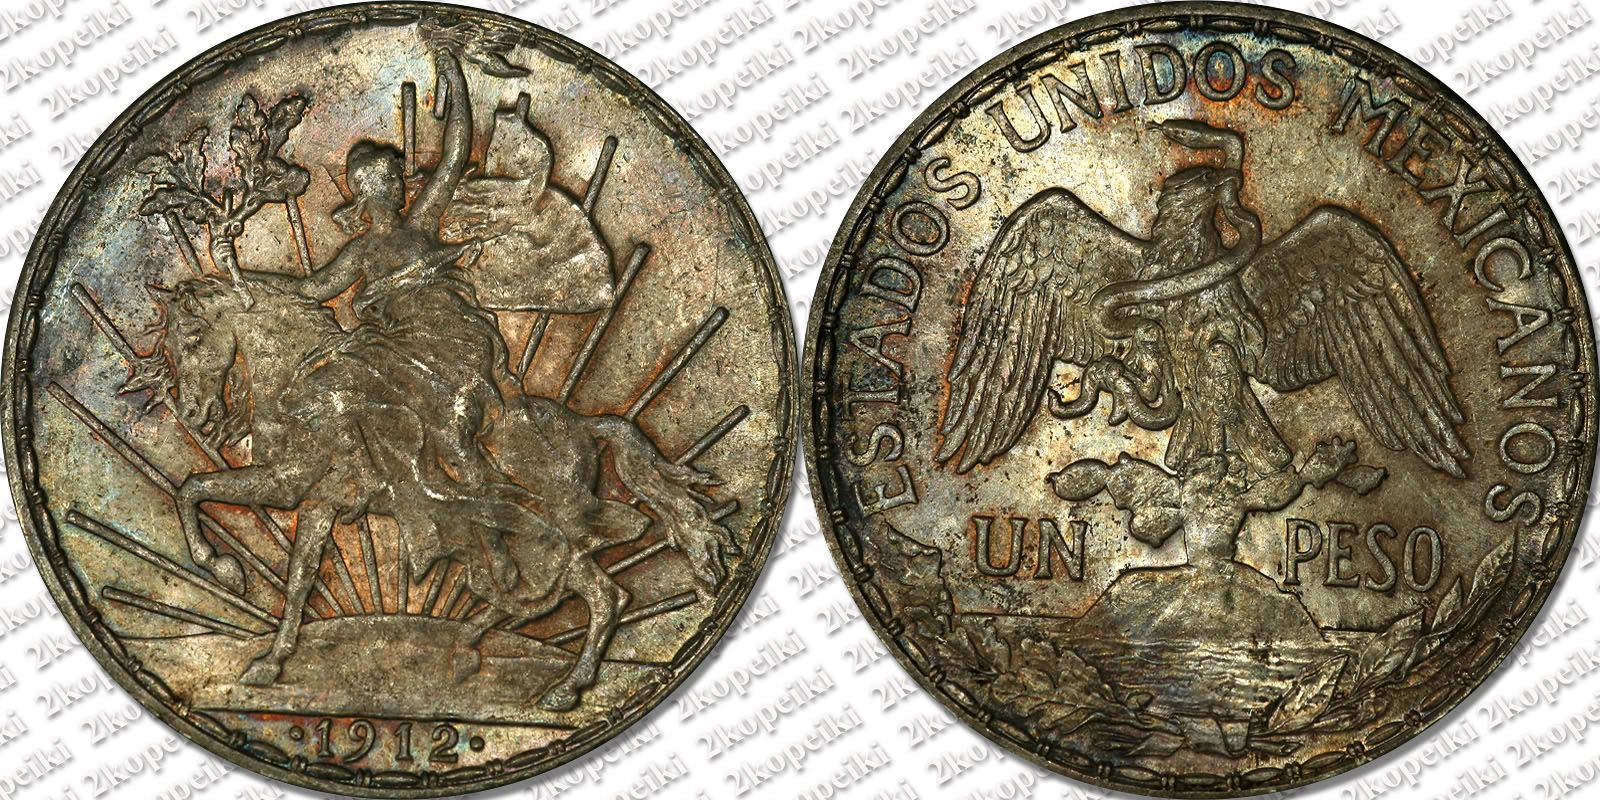 1912-Mex-Peso-1600.jpg